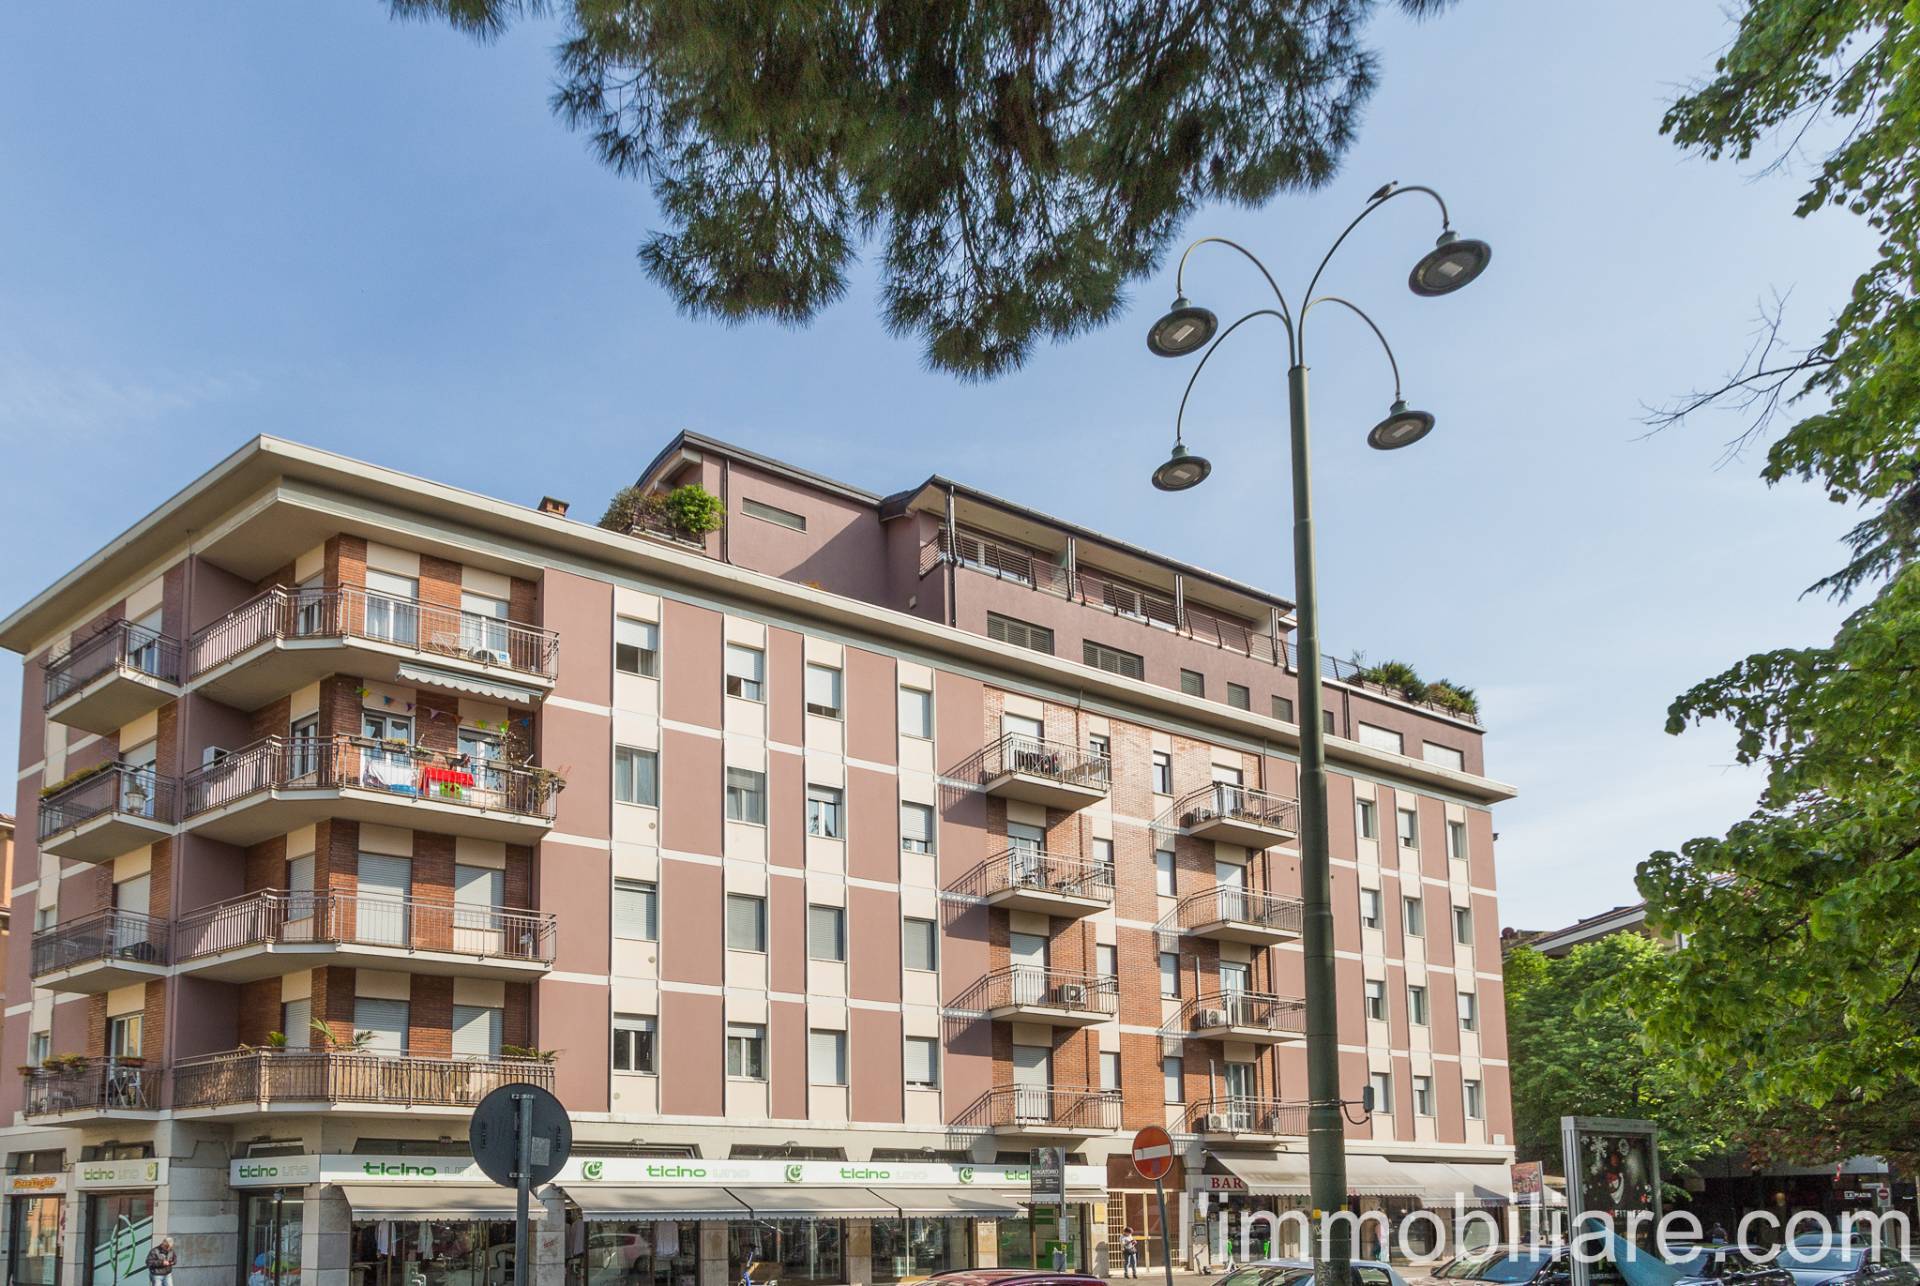 Appartamento in Vendita a Verona: 2 locali, 55 mq - Foto 1